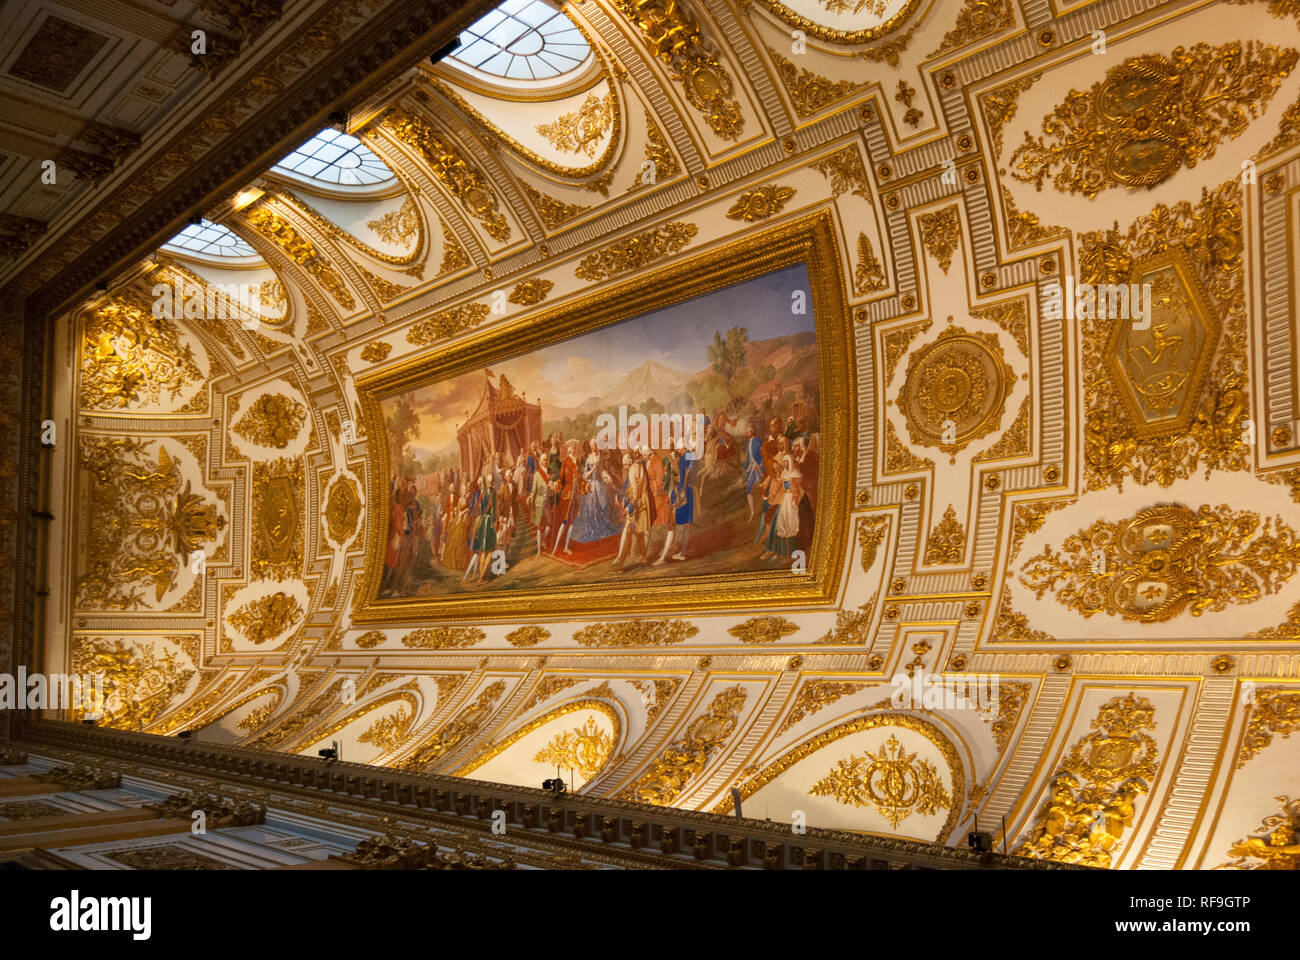 Il Royal Palace, simbolo di Caserta e un Sito Patrimonio Mondiale dell'UNESCO, è uno dei più importanti monumenti del patrimonio artistico italiano. Foto Stock